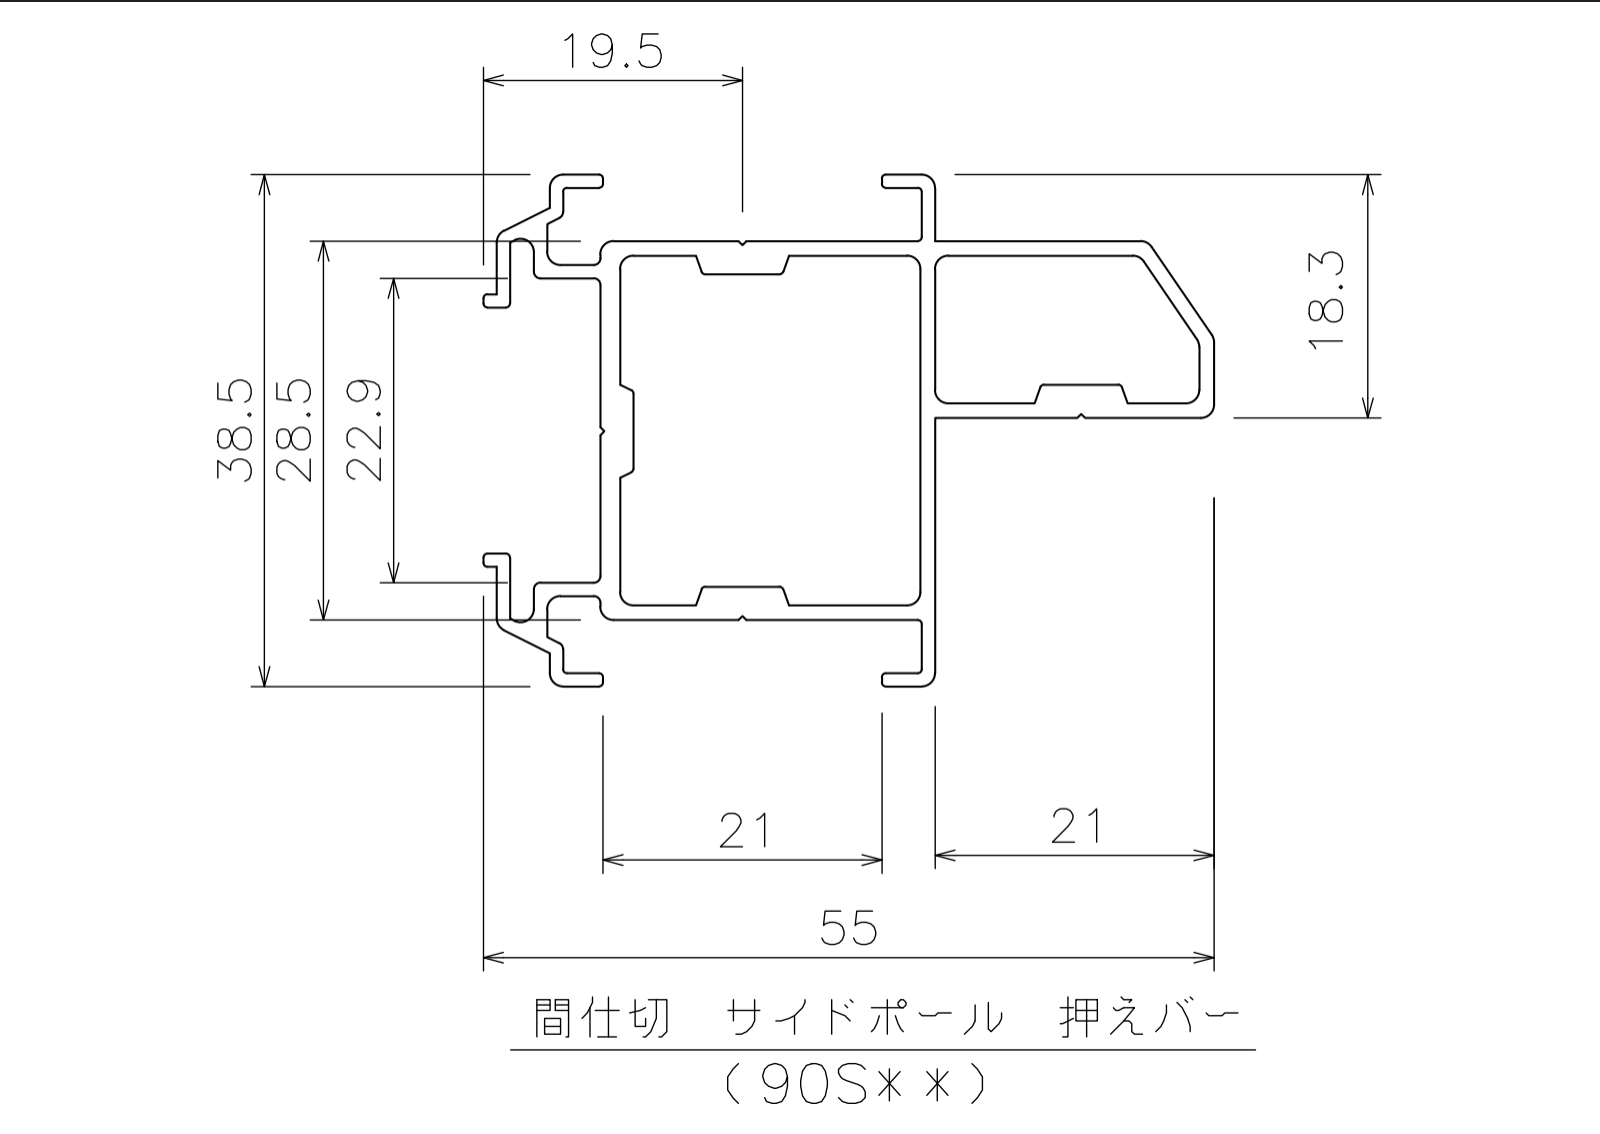 間仕切サイドポール【押えバータイプ】3mの寸法図-1